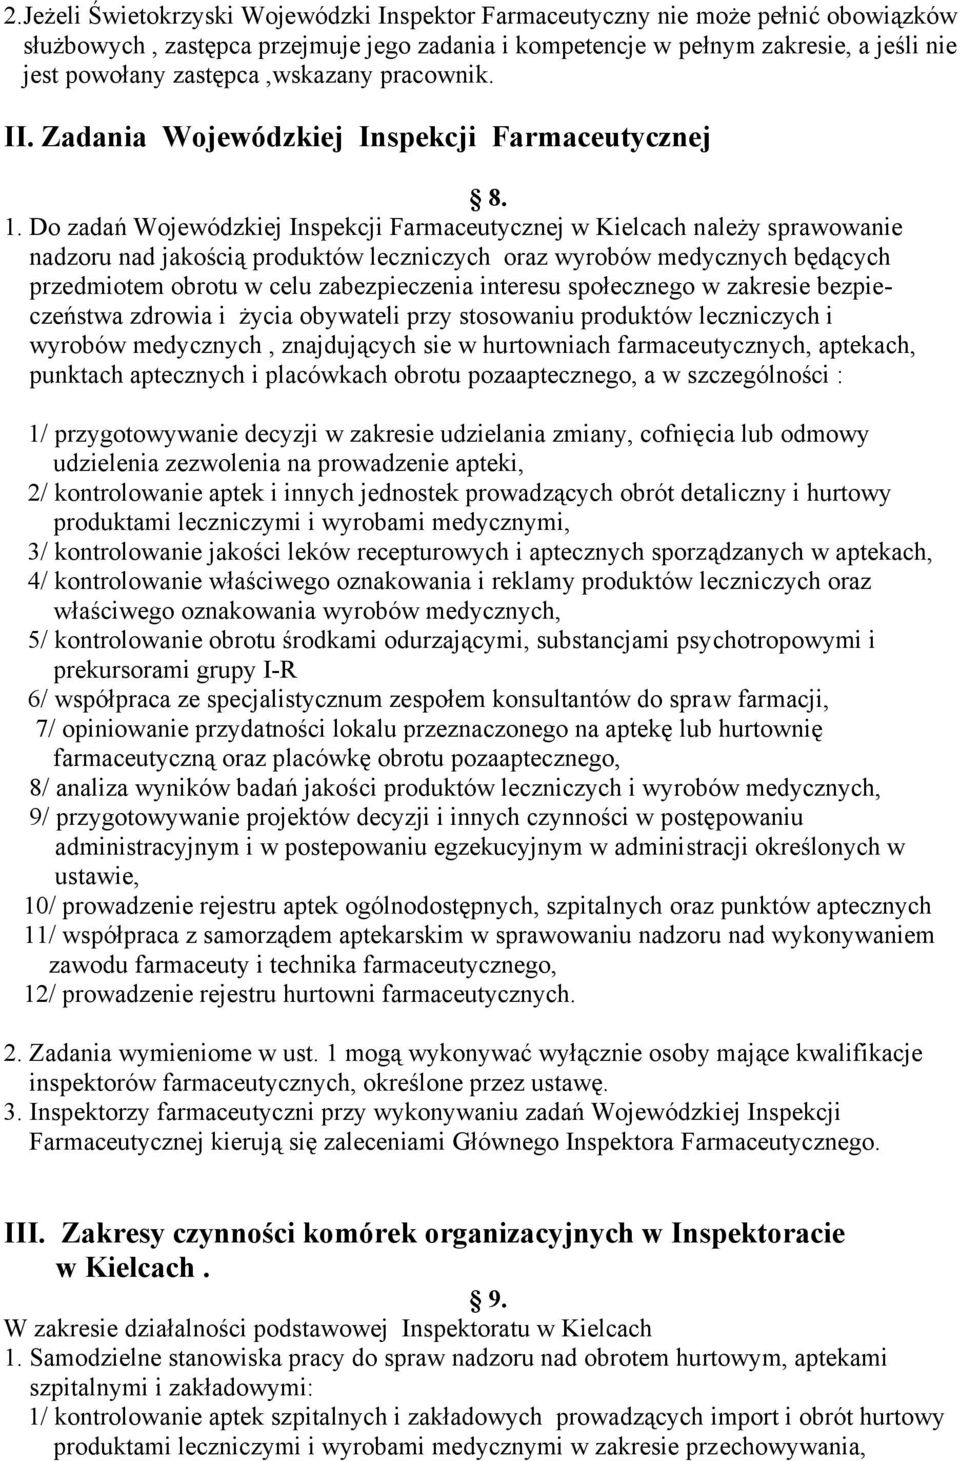 Do zadań Wojewódzkiej Inspekcji Farmaceutycznej w Kielcach należy sprawowanie nadzoru nad jakością produktów leczniczych oraz wyrobów medycznych będących przedmiotem obrotu w celu zabezpieczenia